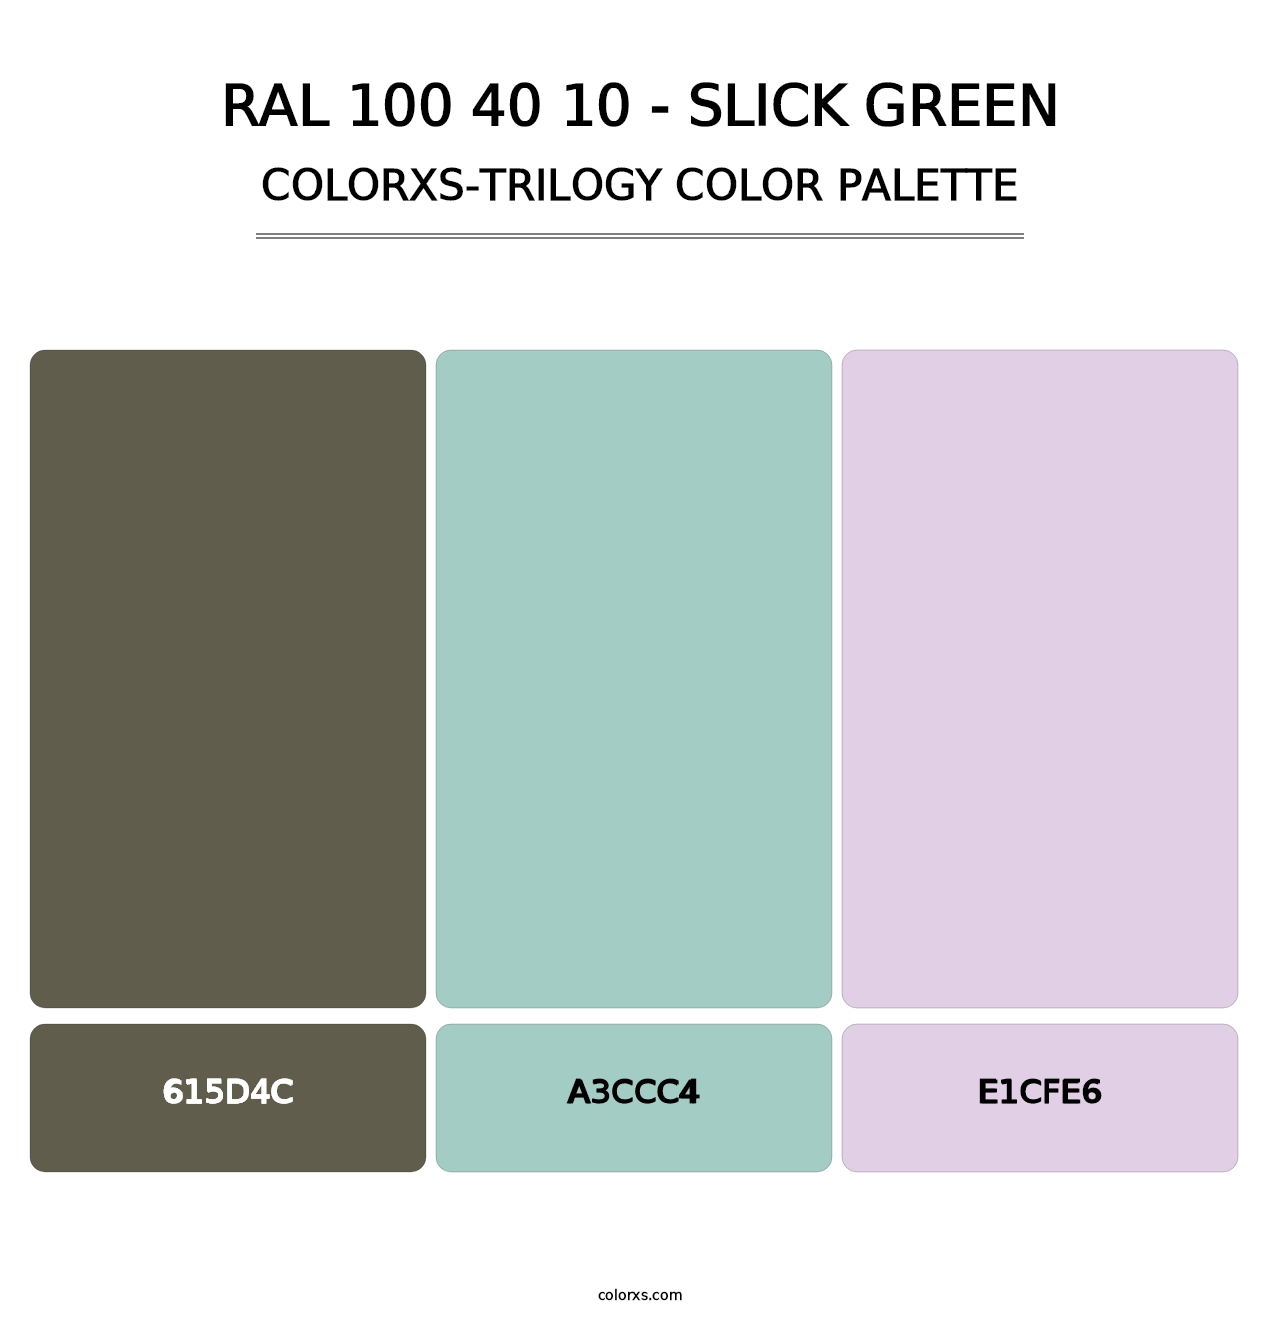 RAL 100 40 10 - Slick Green - Colorxs Trilogy Palette